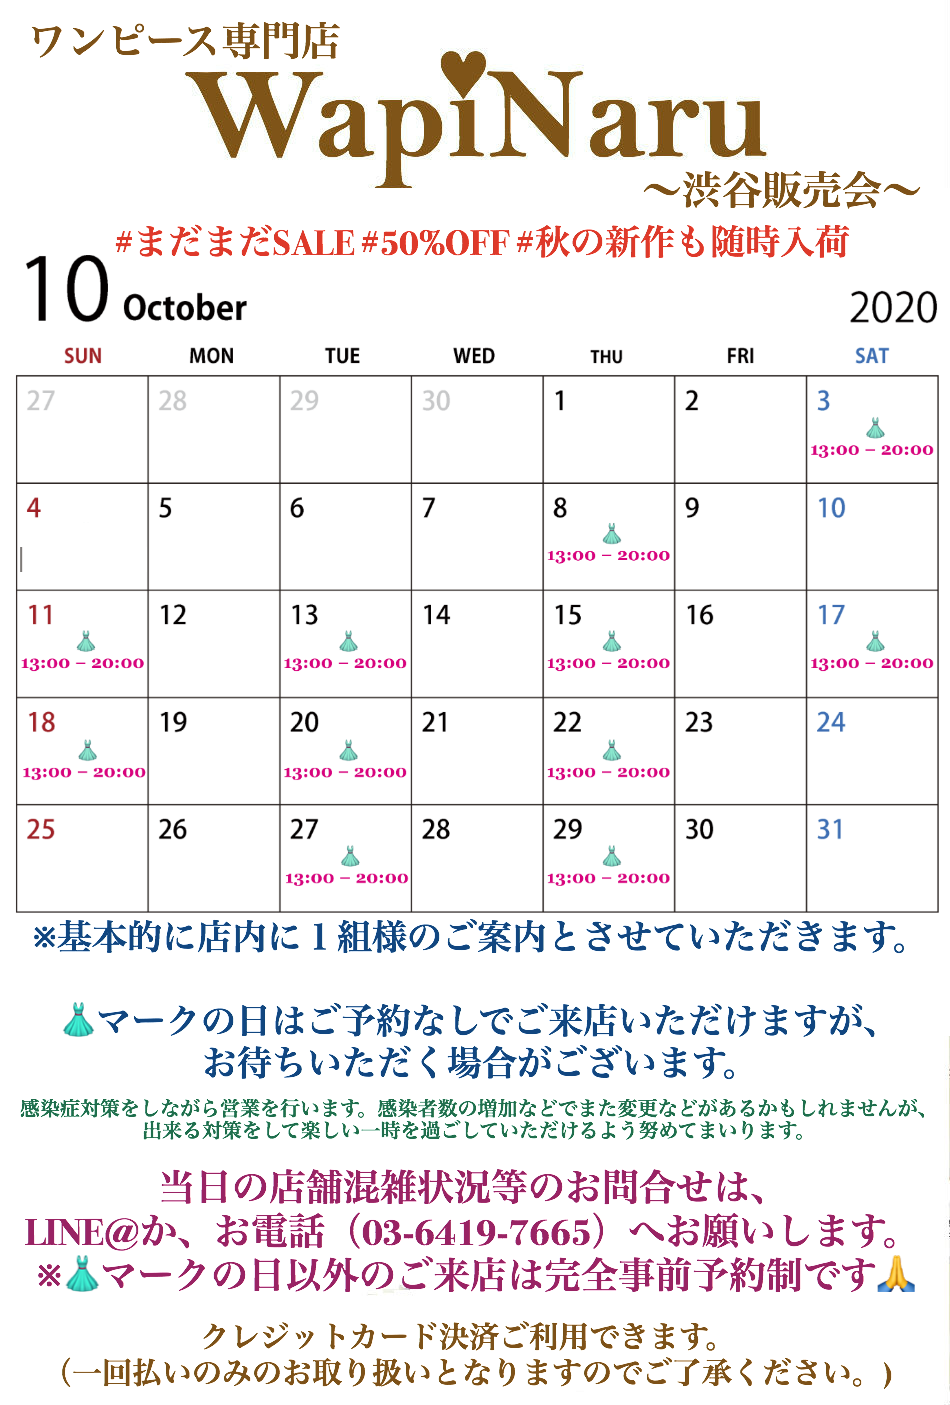 2020年10月 渋谷販売会